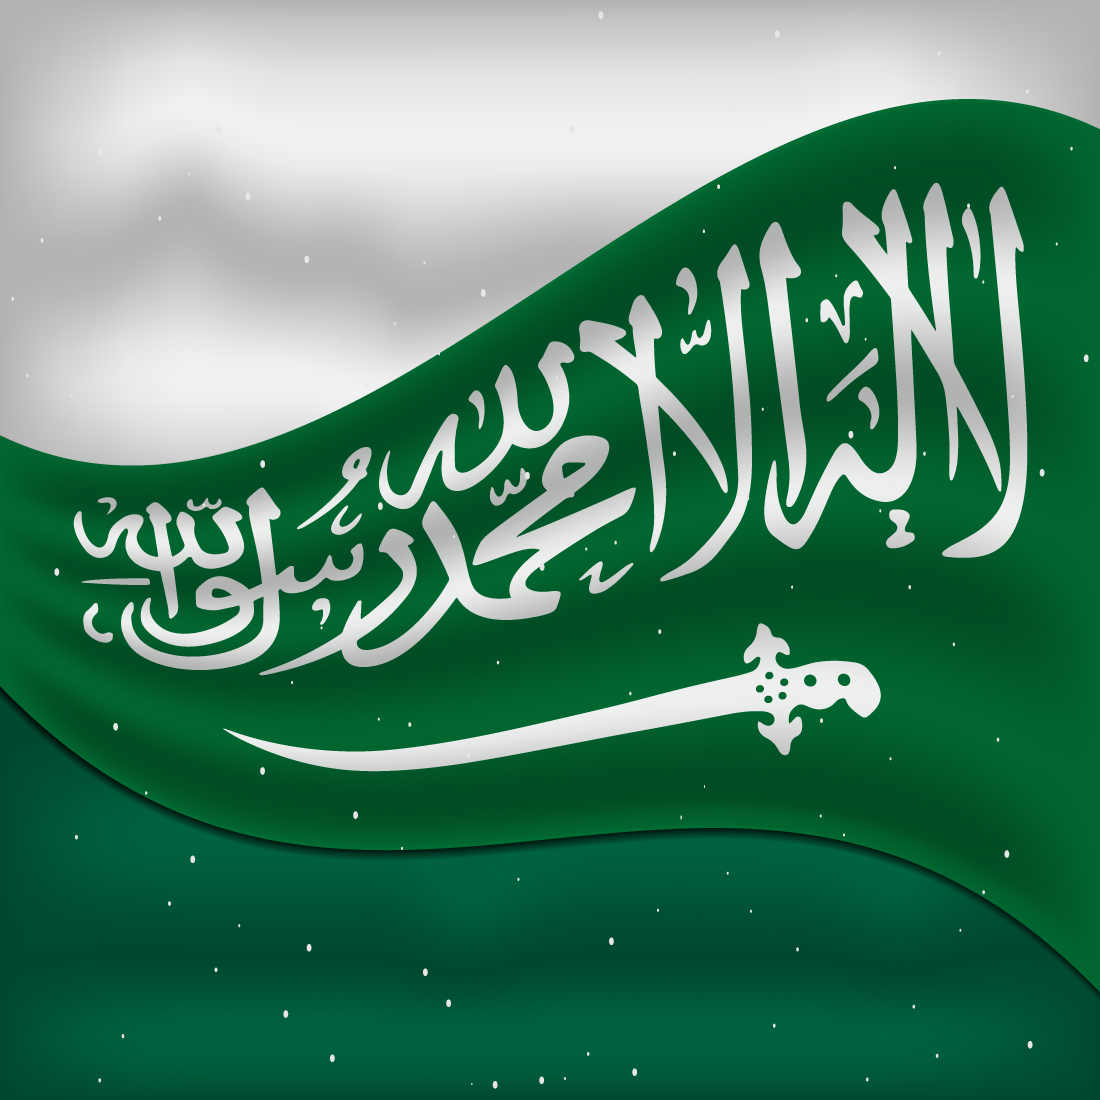 Adorable image of Saudi Arabian flag.